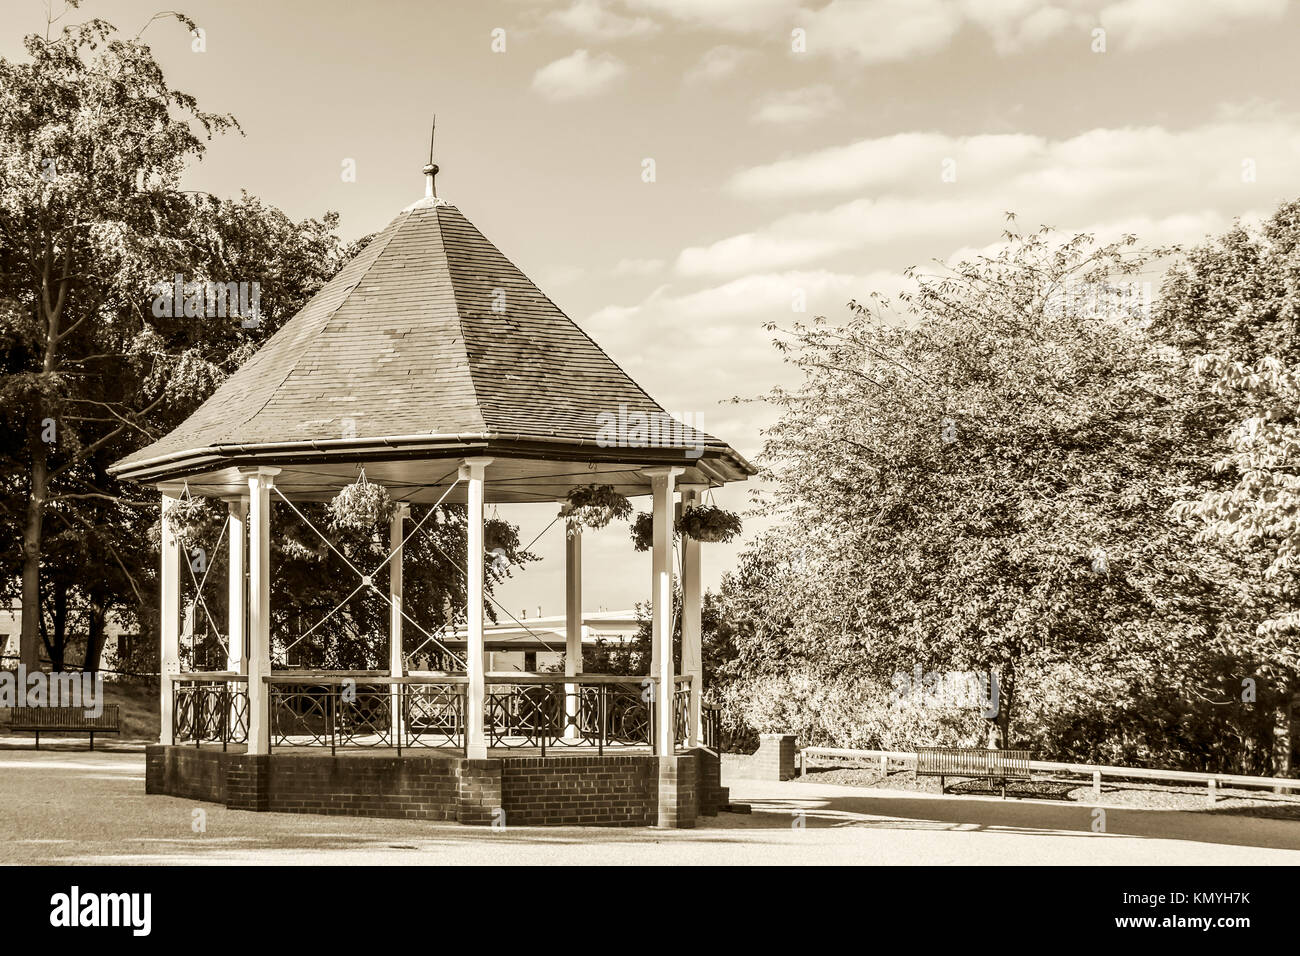 Musikpavillon in Telford Park, Telford, Shropshire Vereinigtes Königreich. Bild auf der 15. Juli 2014 entnommen und zu einem Sepia Ton umgewandelt Stockfoto